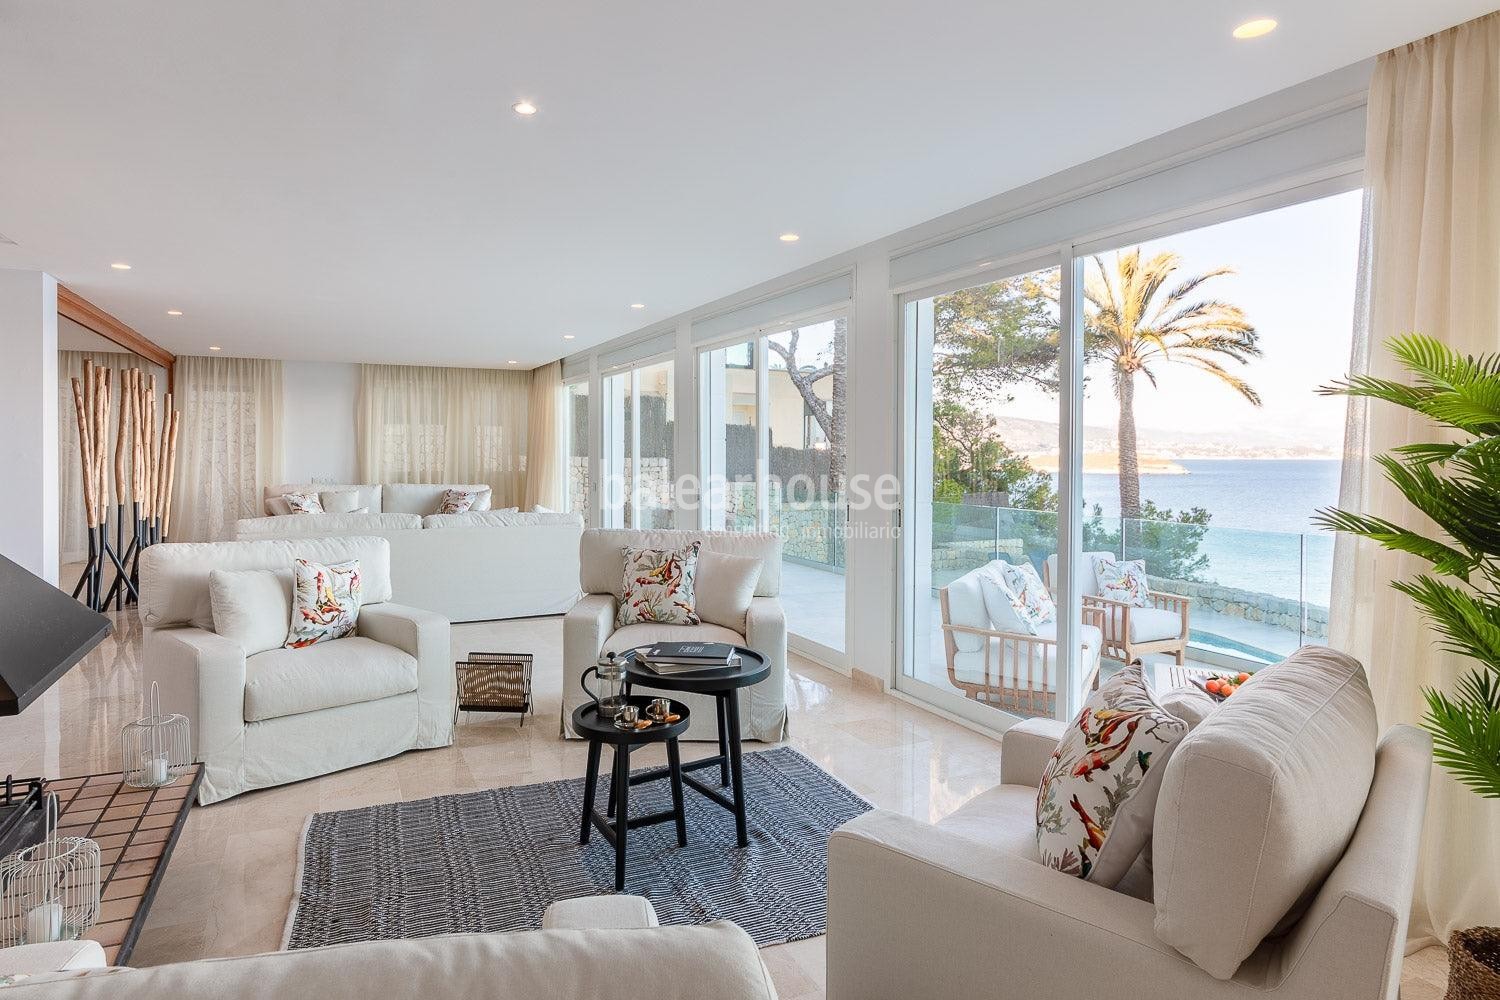 Gran villa privada en alquiler con preciosas vistas al mar situada en primera línea en Cala Vinyes